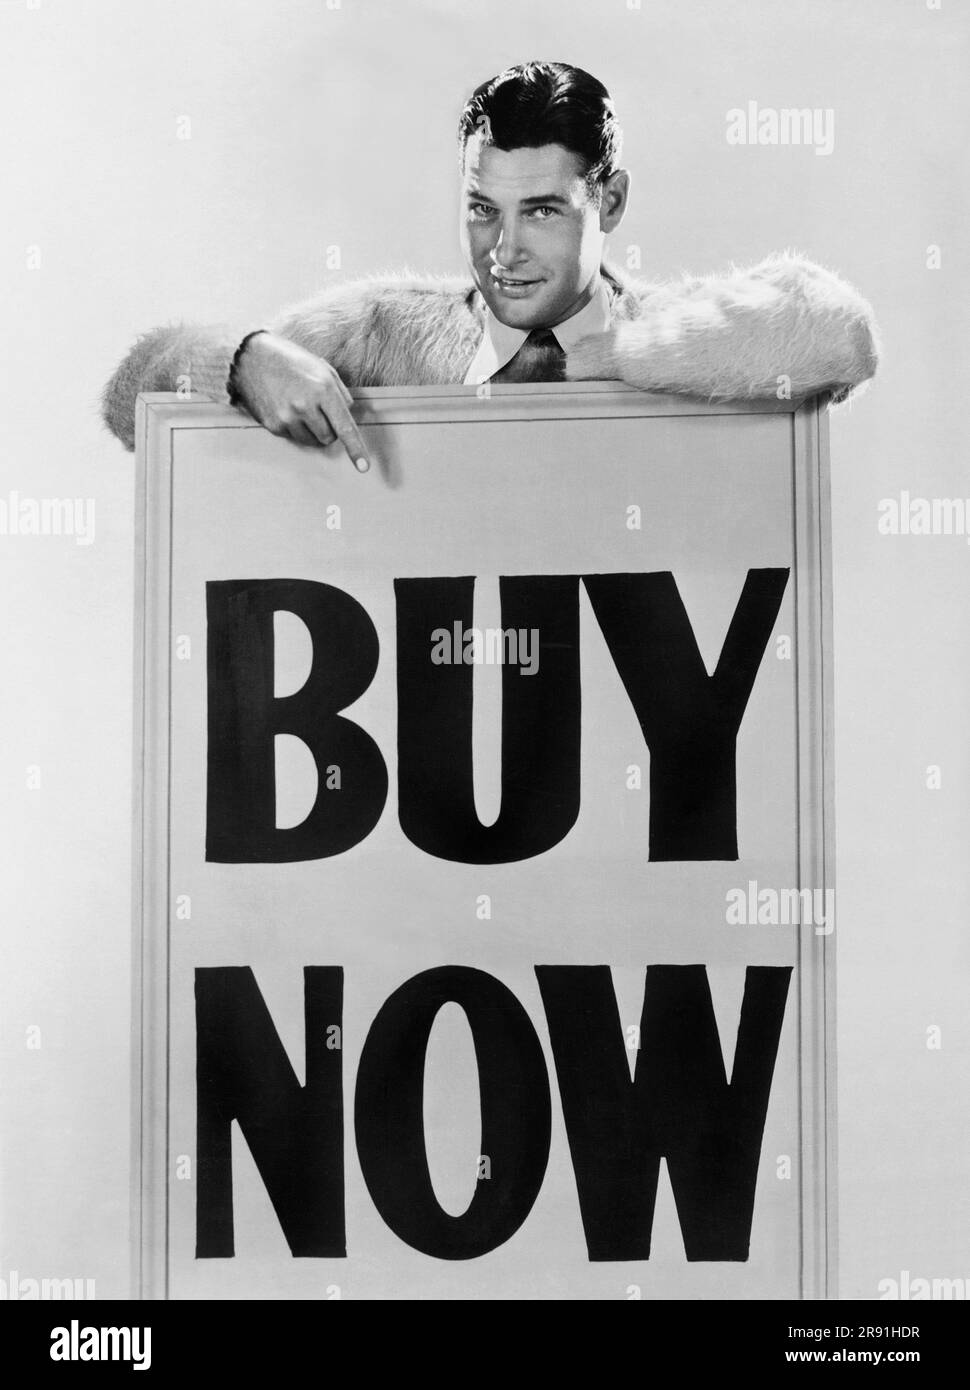 Hollywood, California: c. 1930 l'attore Richard Arlen ritiene che se il denaro viene mantenuto in circolazione, la prosperità tornerà nel paese. Il suo slogan per i bei tempi è "Acquista ora". Foto Stock